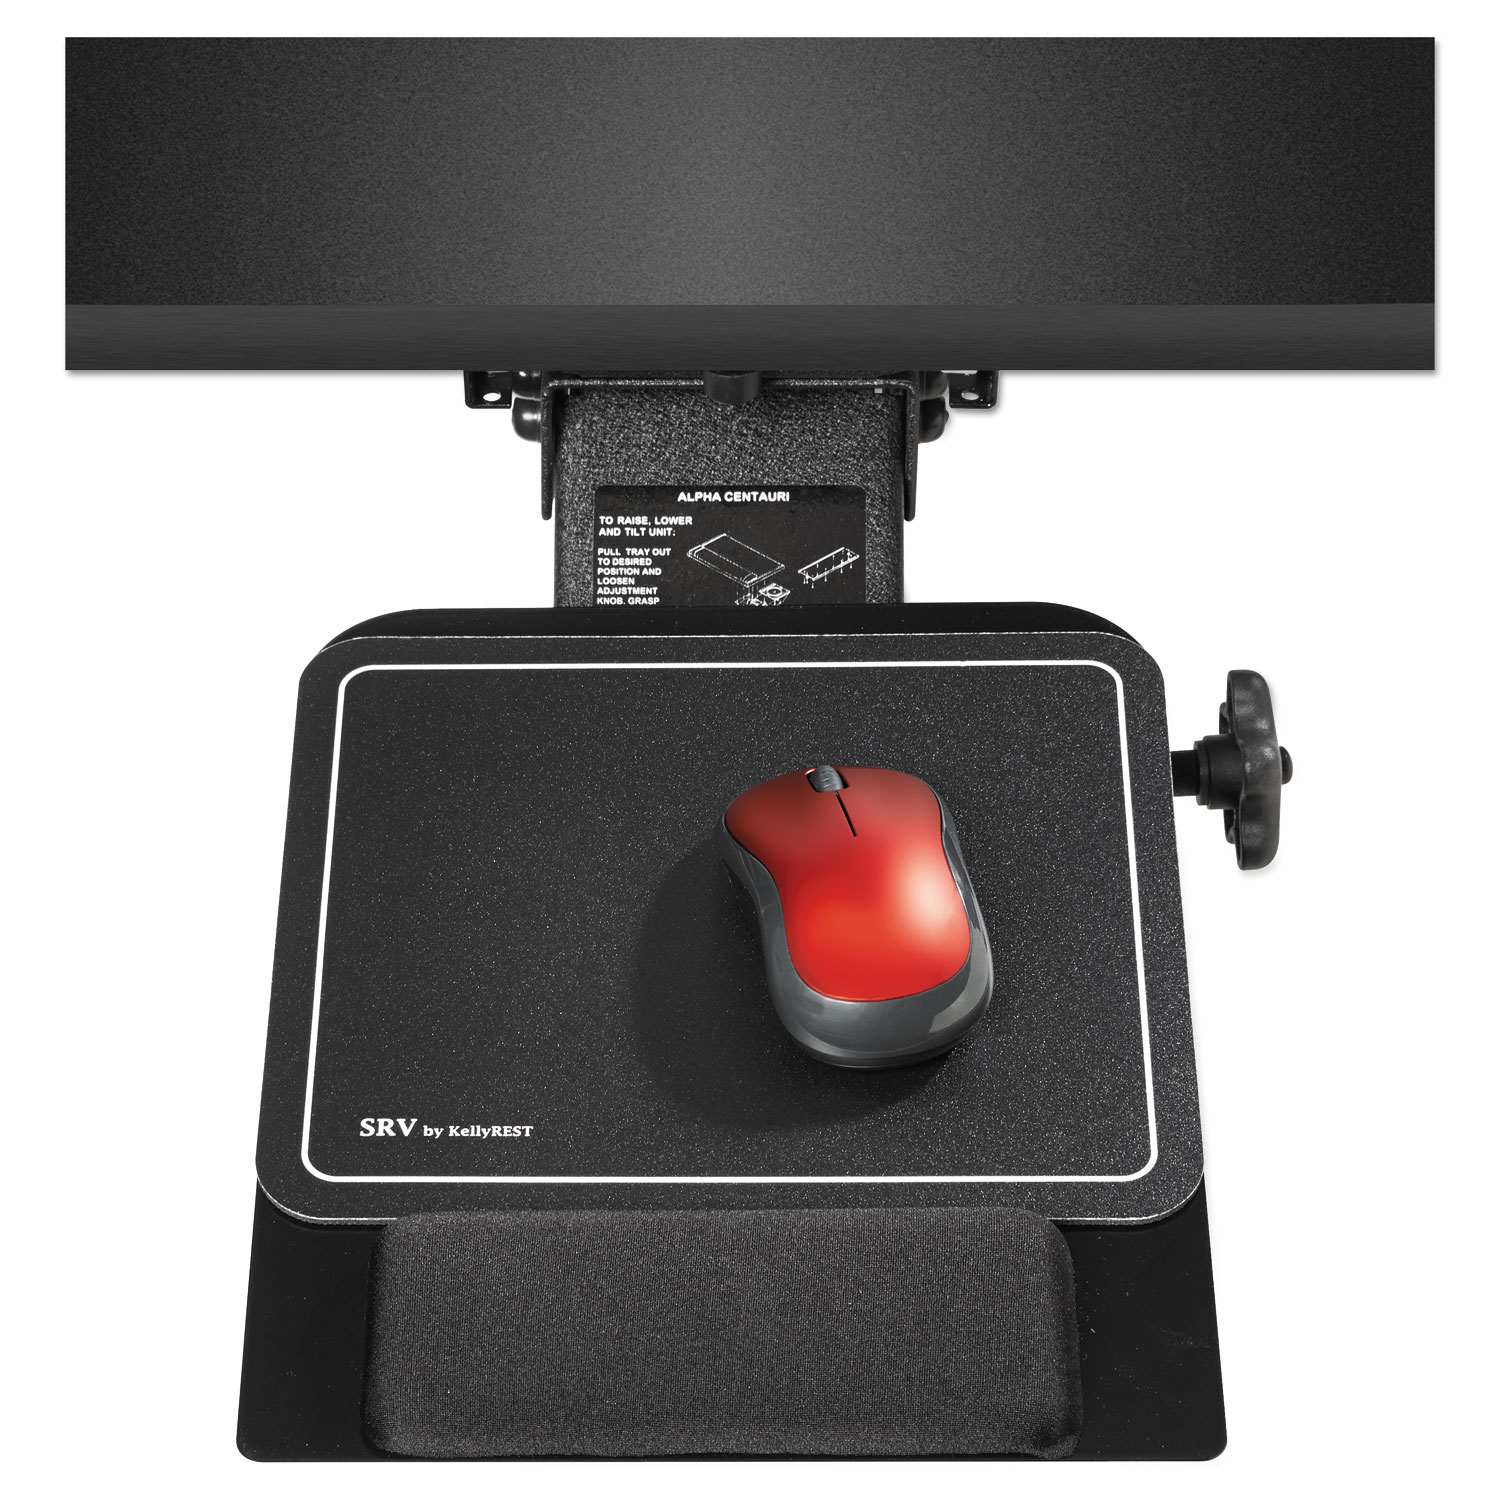 Adjustable Under Desk Mount Mouse Platform, 9-1/2 x 11, Black